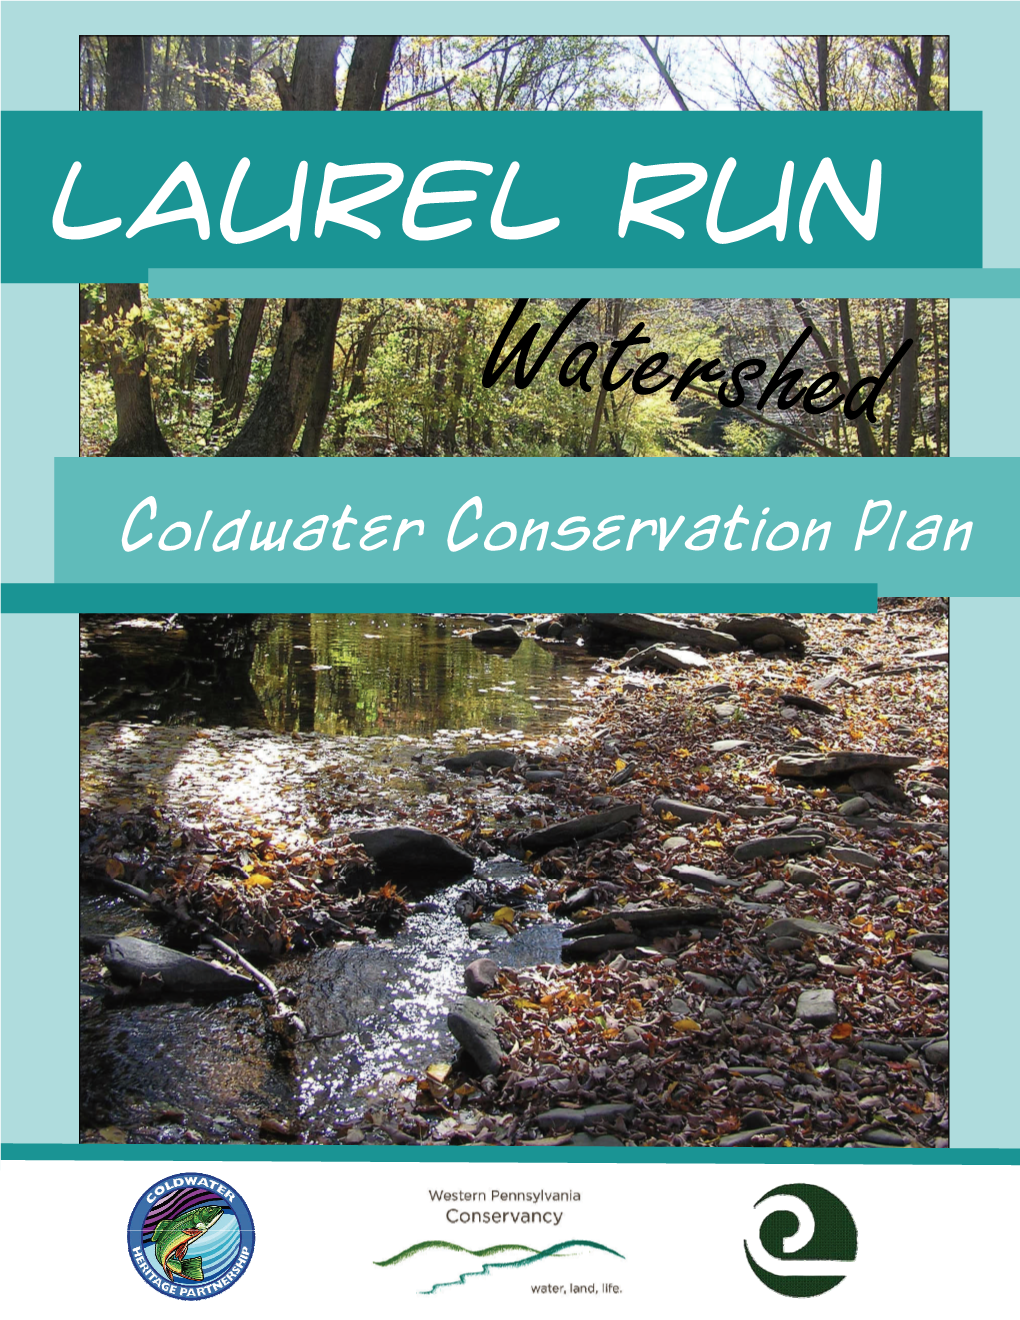 Occurrences of Laurel Run Fish Species